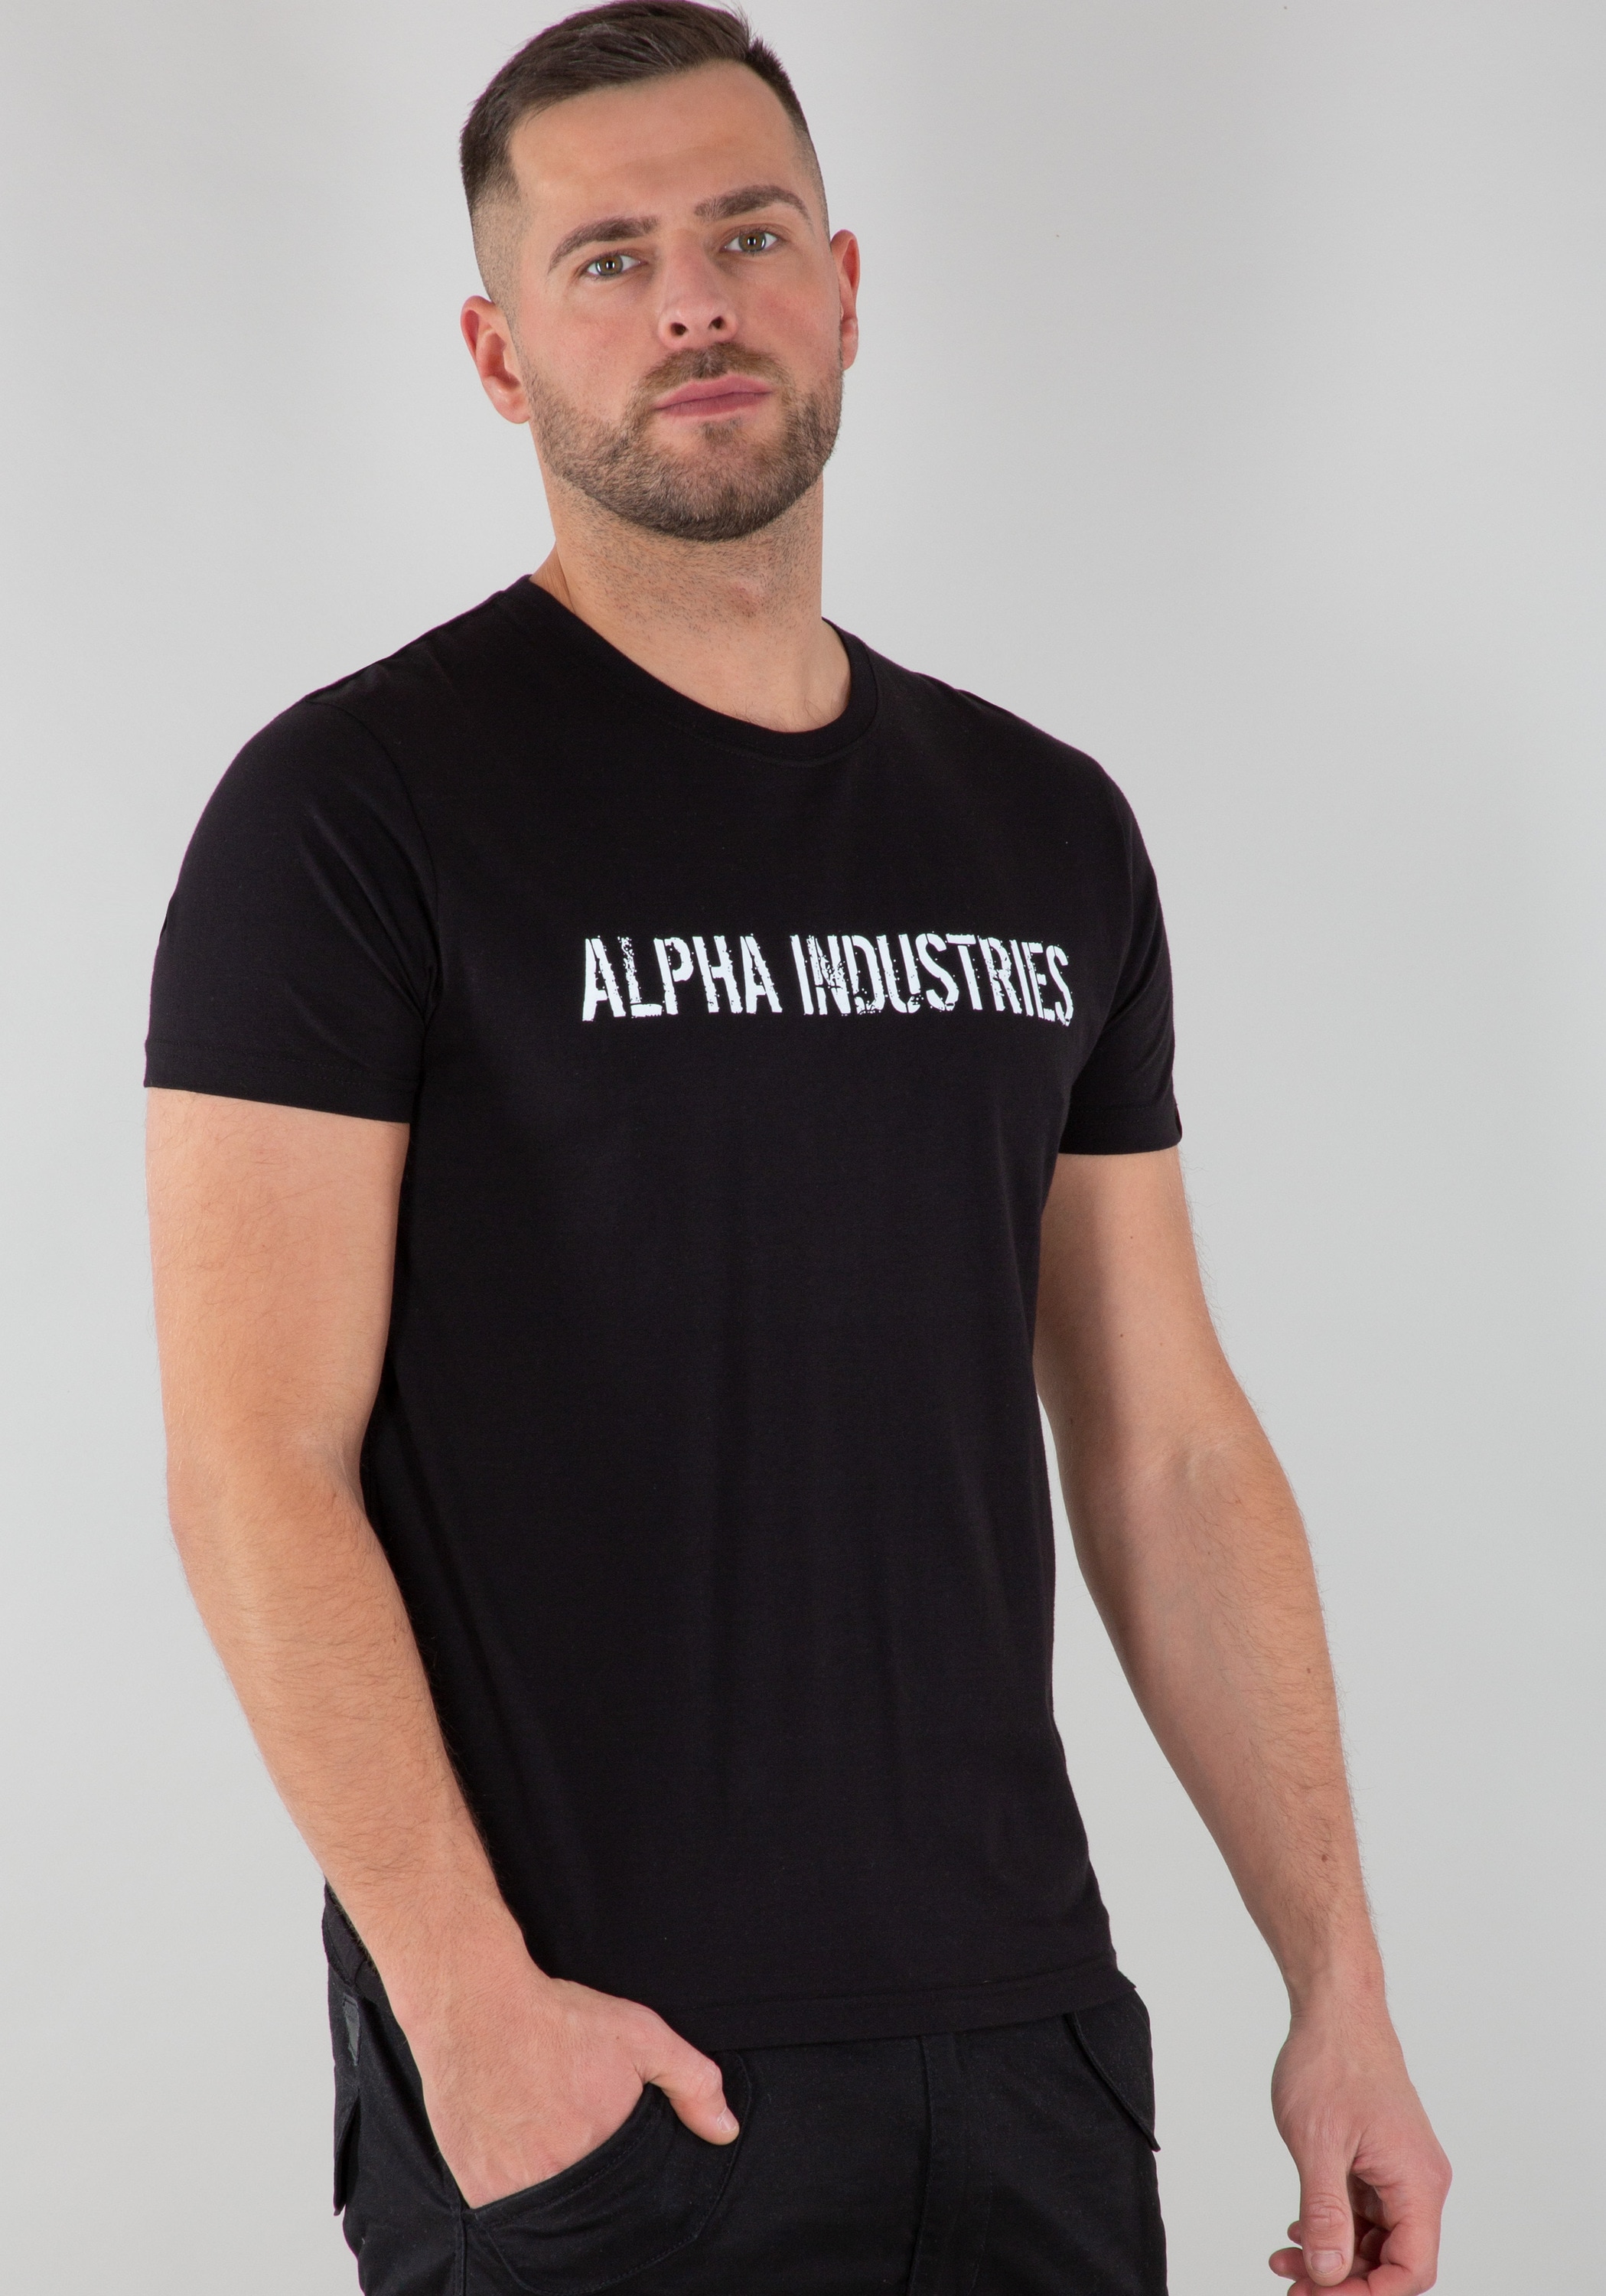 Alpha Industries - T« Men bei Industries RBF ♕ T-Shirts T-Shirt Moto »Alpha